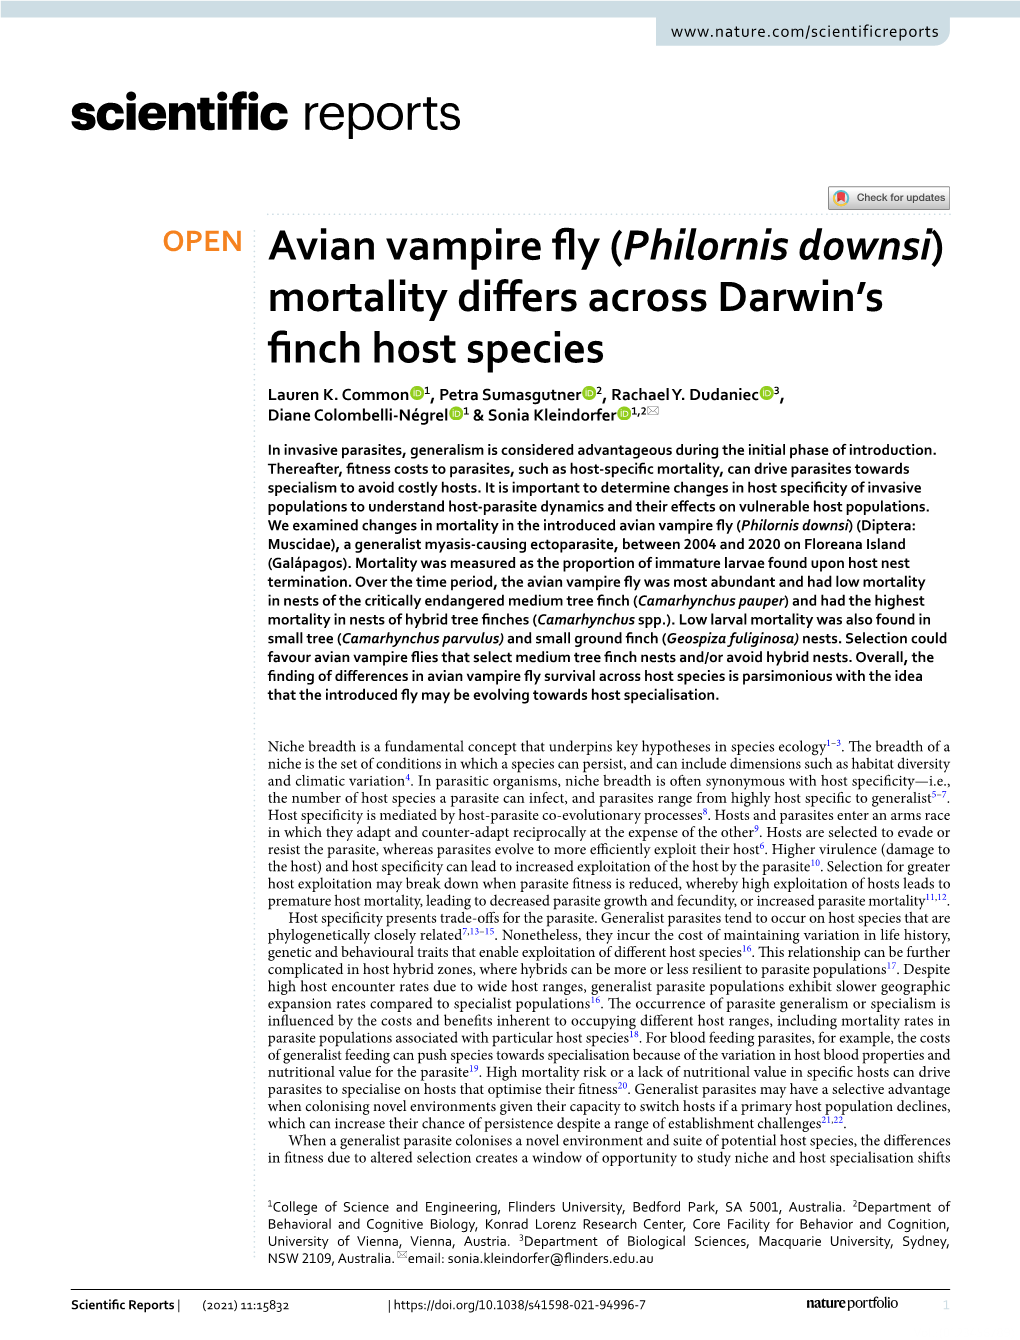 Philornis Downsi) Mortality Difers Across Darwin’S Fnch Host Species Lauren K